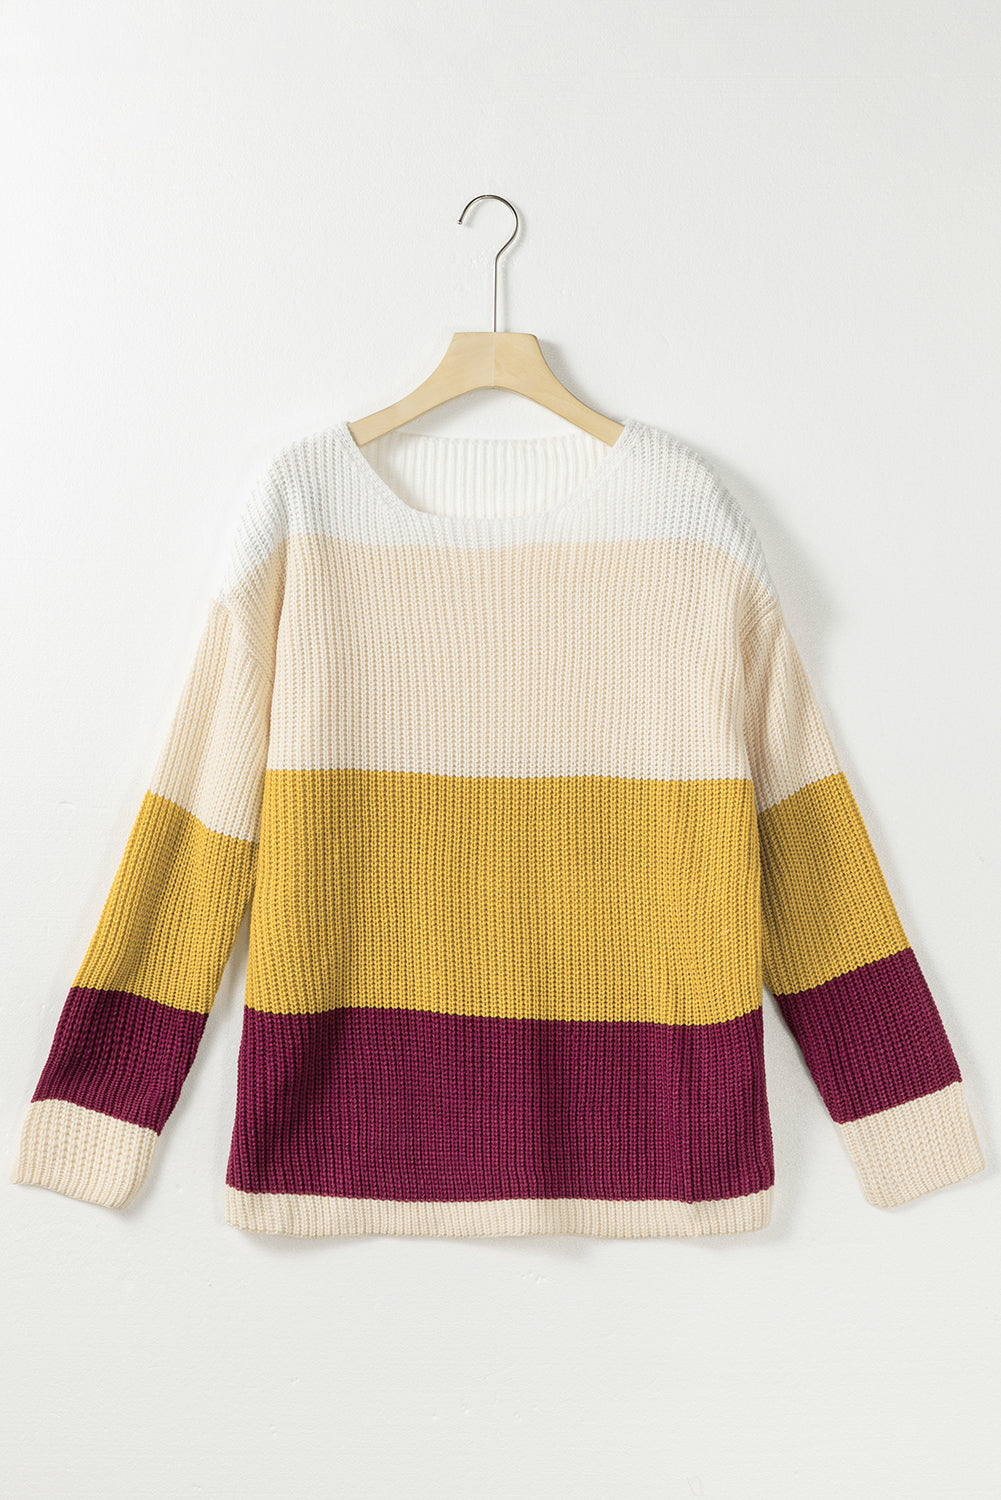 Multicolor Colorblock Striped Sweater NO: 4144